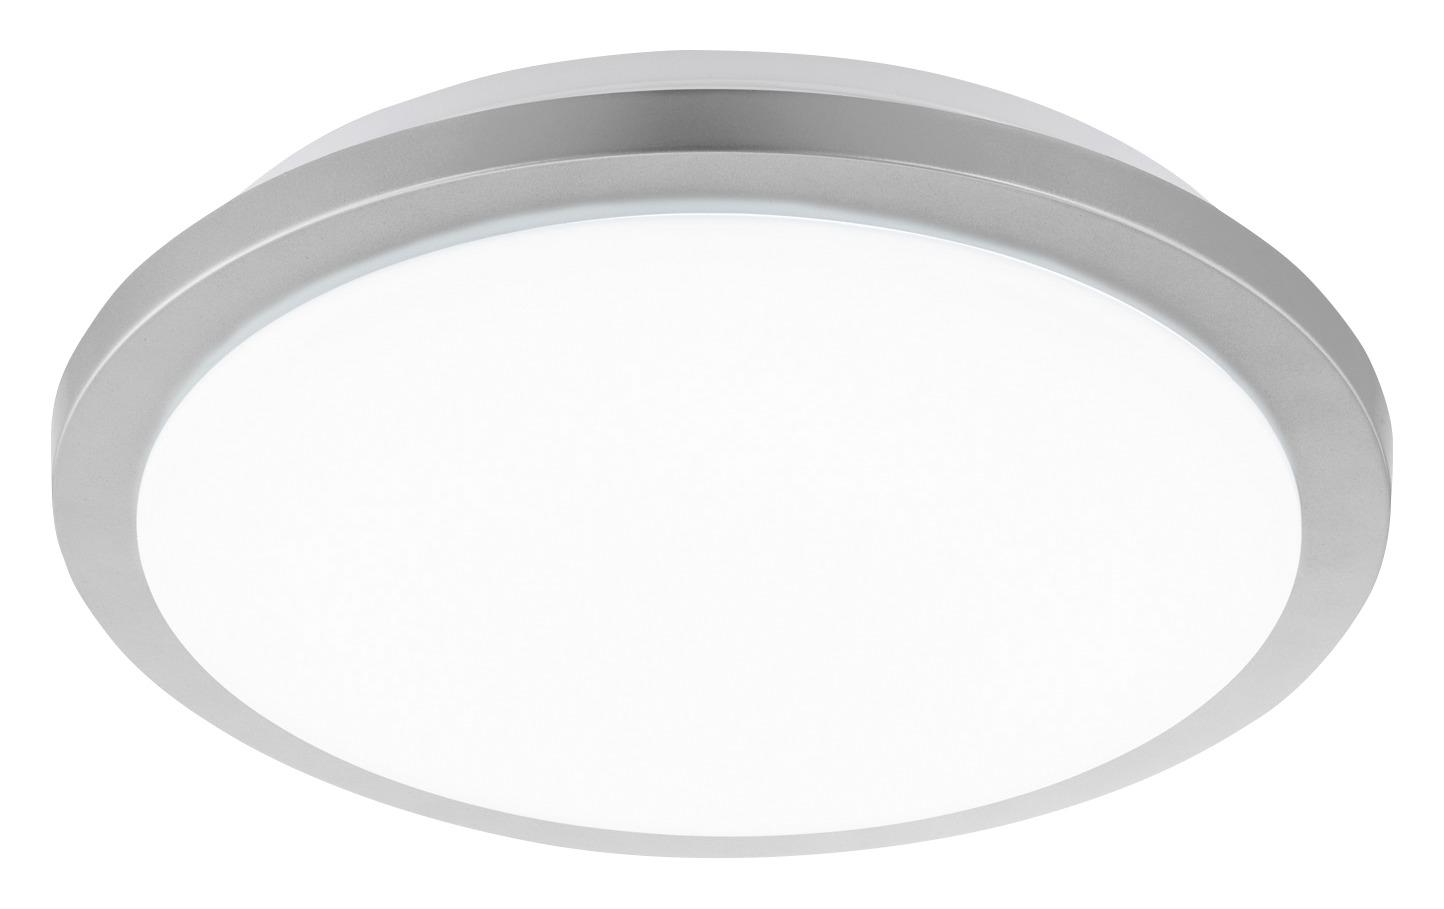 LED-Deckenleuchte Competa-St Ø 34,5 cm 4-Fach Schaltbar - Silberfarben/Weiß, Basics, Kunststoff/Metall (34,5/8,5cm)